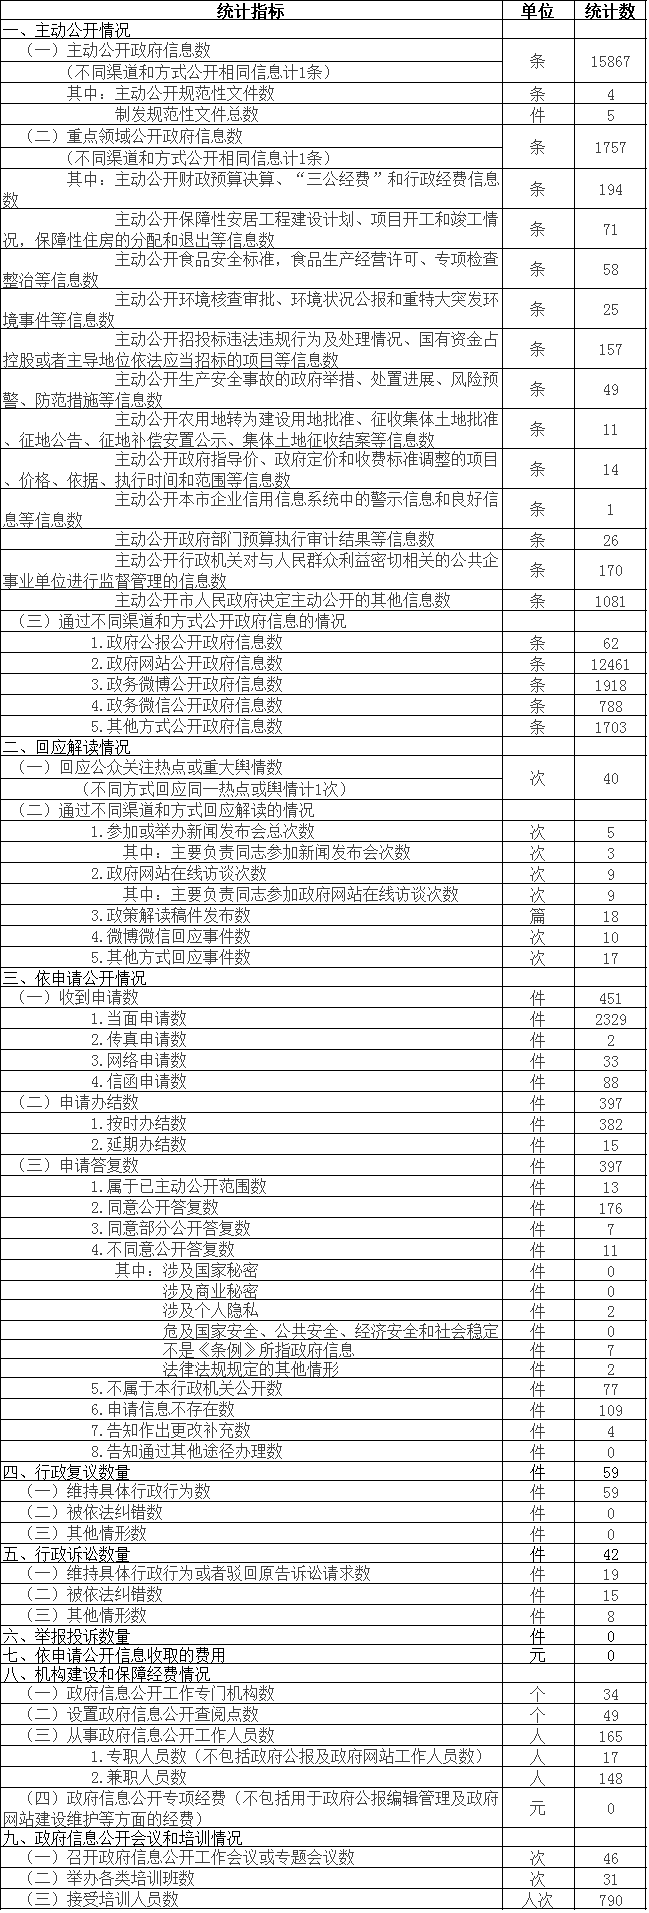 北京市門頭溝區政府信息公開情況統計表